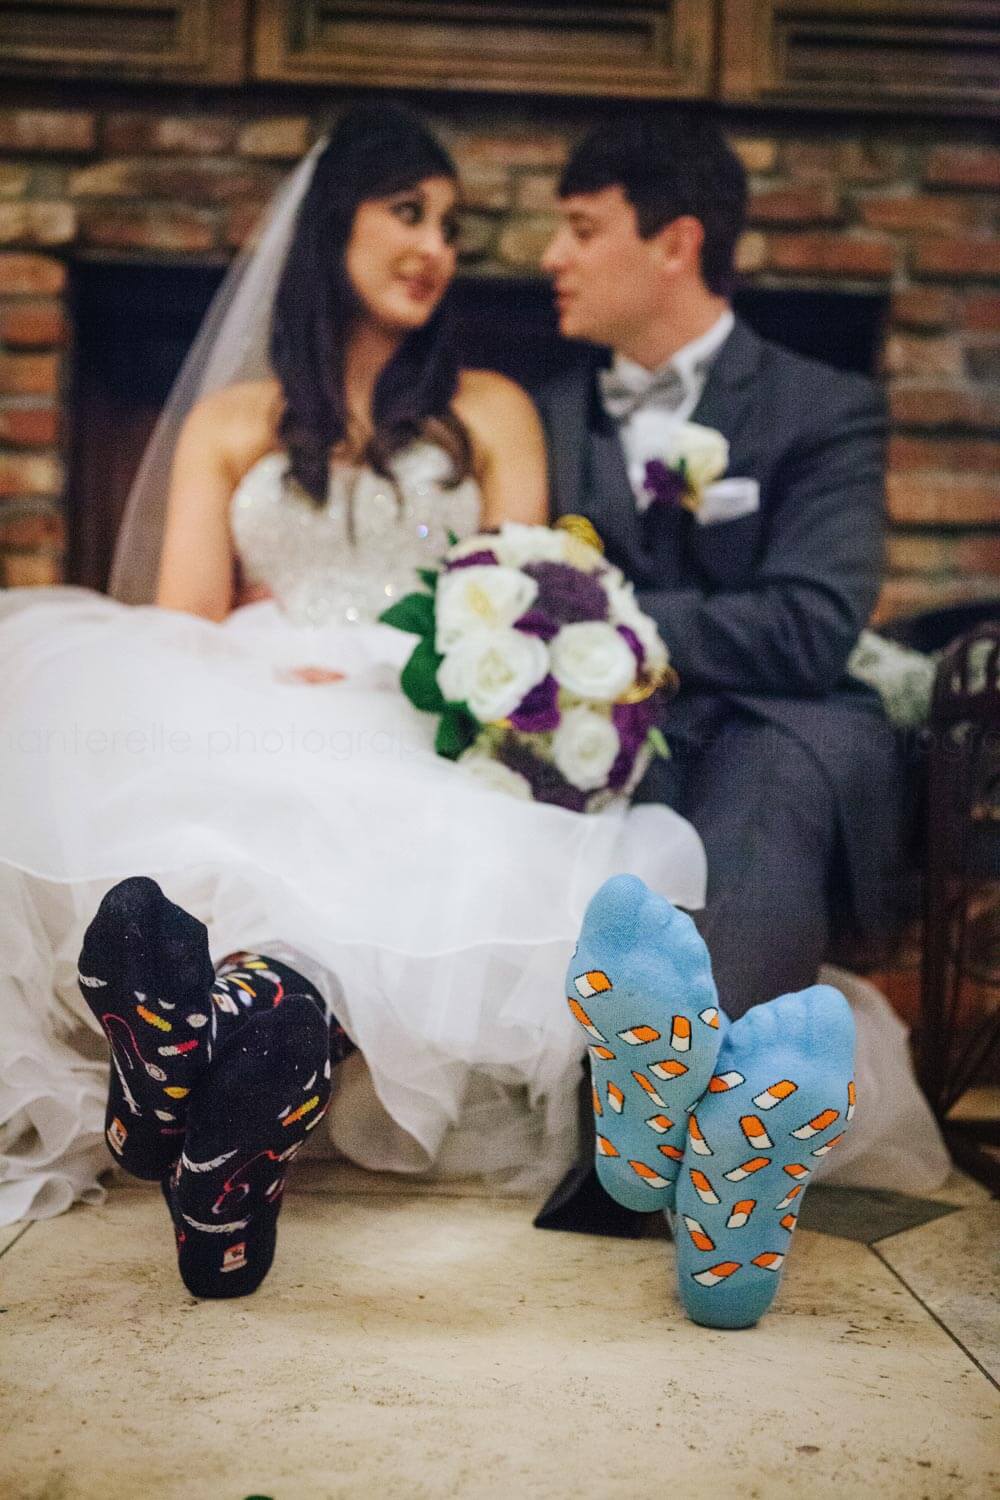 pharmacists get married in socks at atlanta wedding